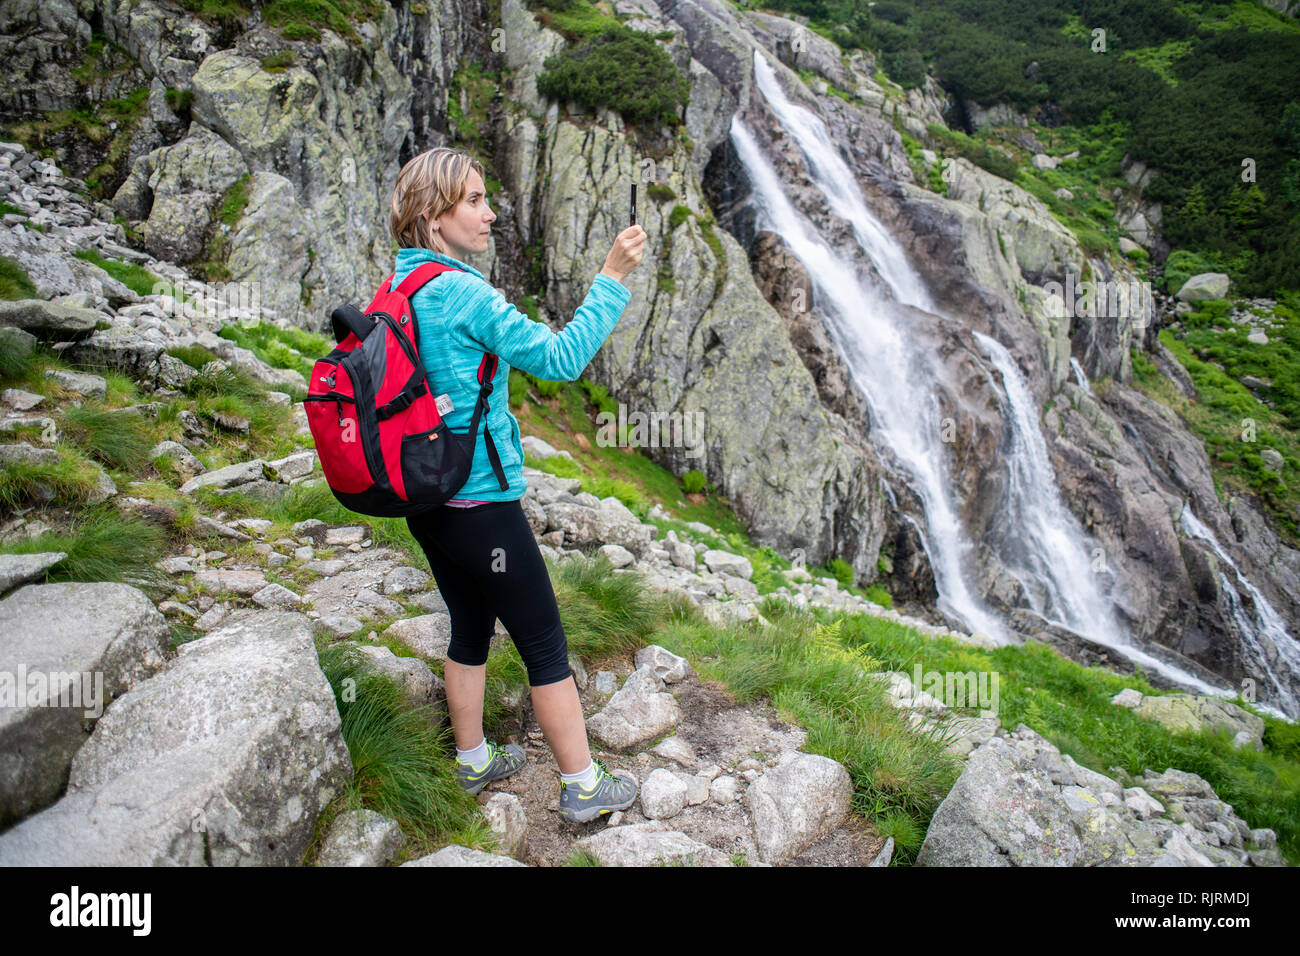 Una donna scatta una foto con il suo telefono cellulare della Wielka Siklawa la cascata più alta in Polonia nel Parco nazionale dei Tatra,Piccola Polonia voivodato, Polan Foto Stock